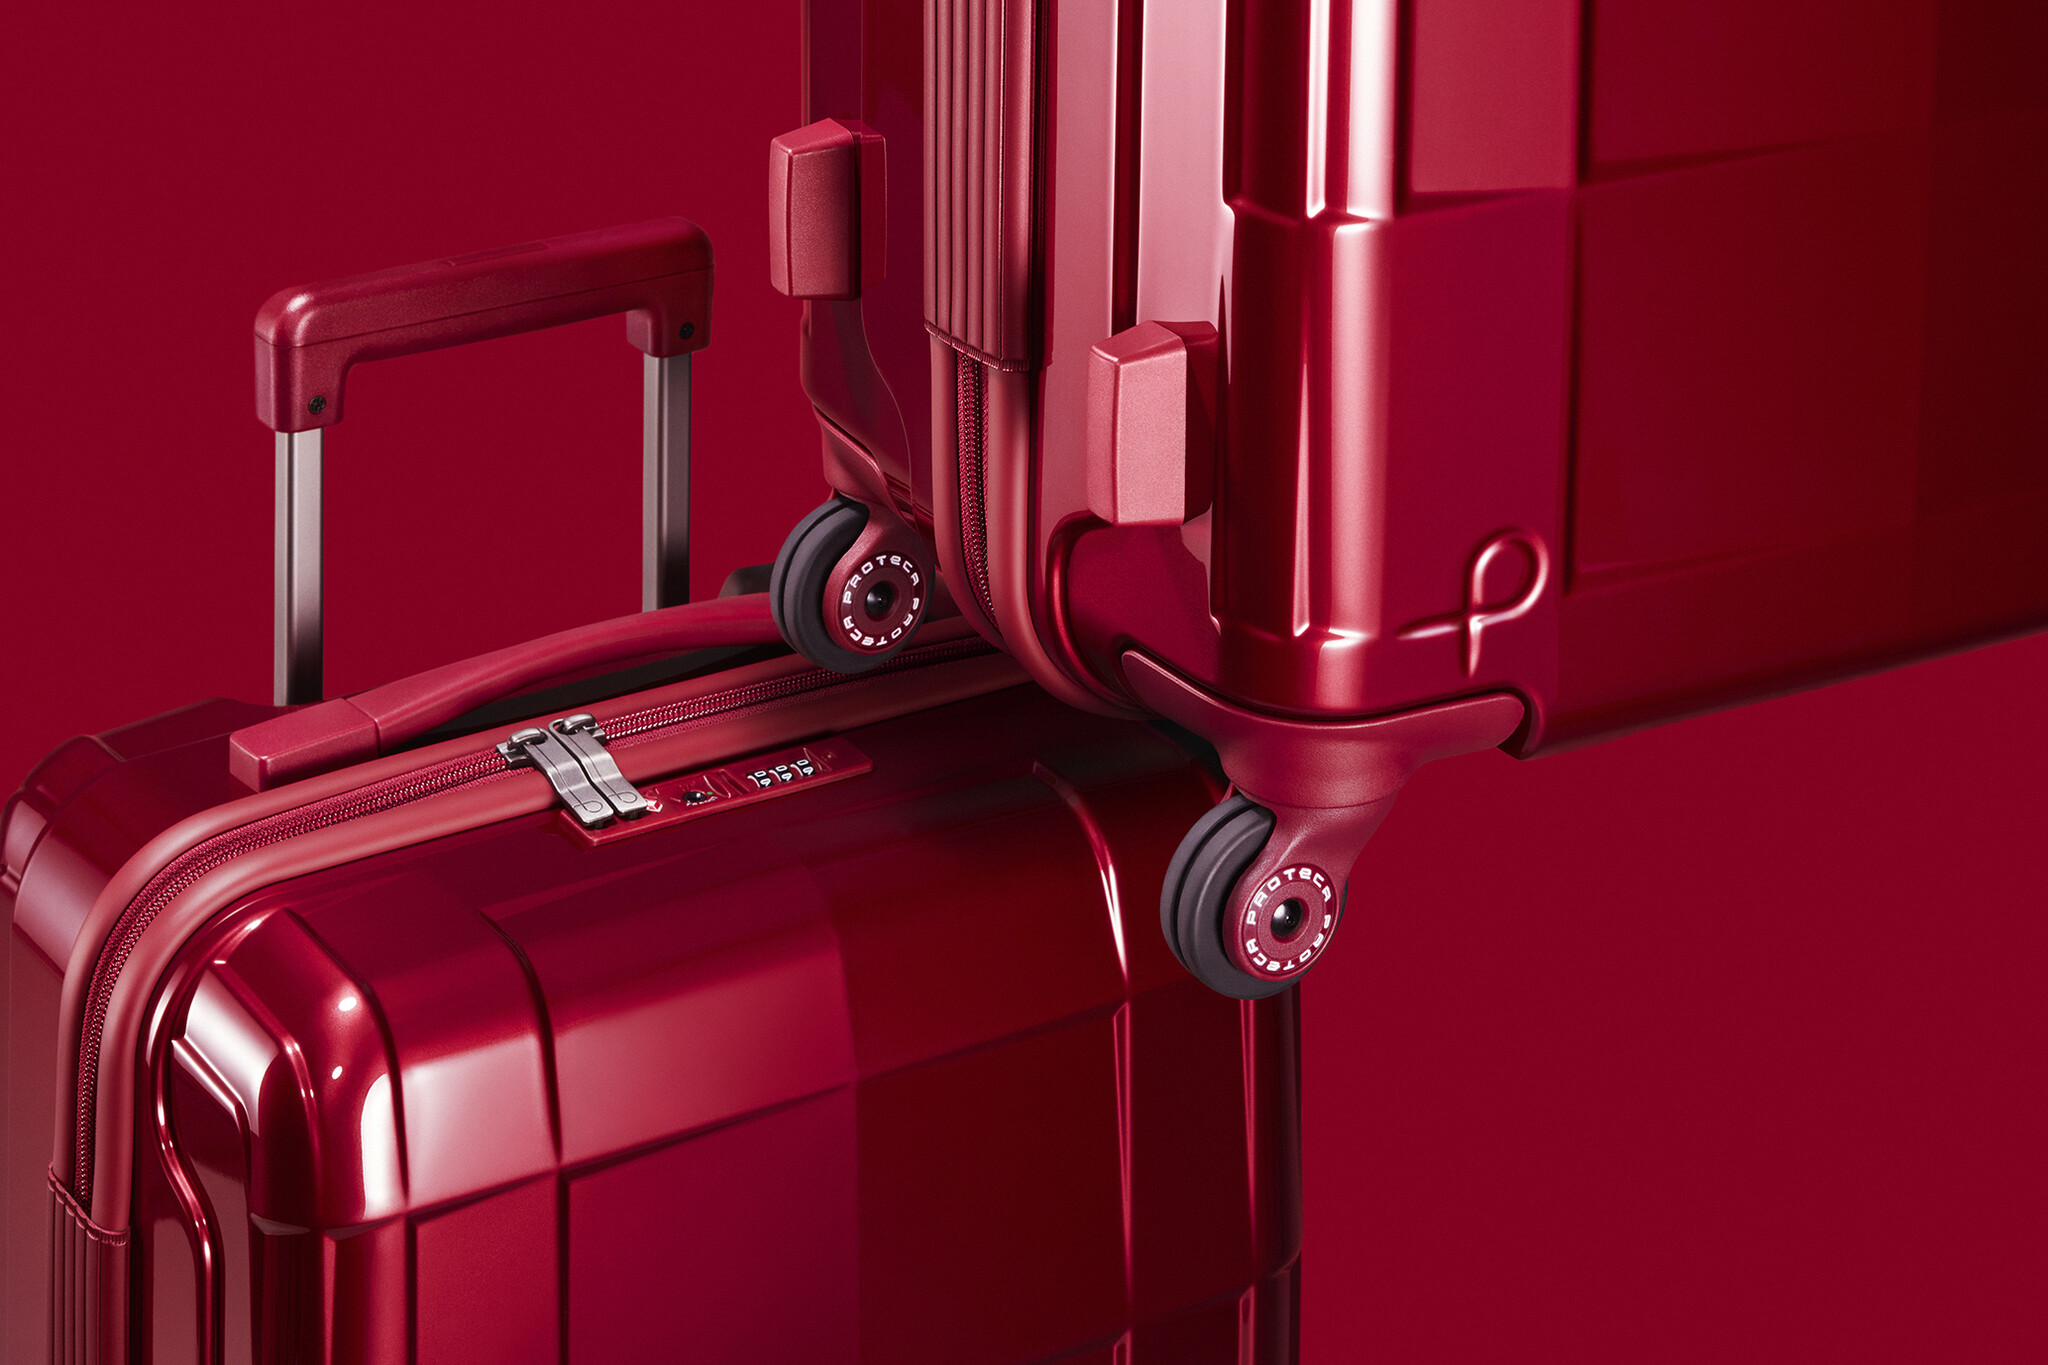 日本製国産トラベルバッグブランド「プロテカ」の高機能スーツケースが